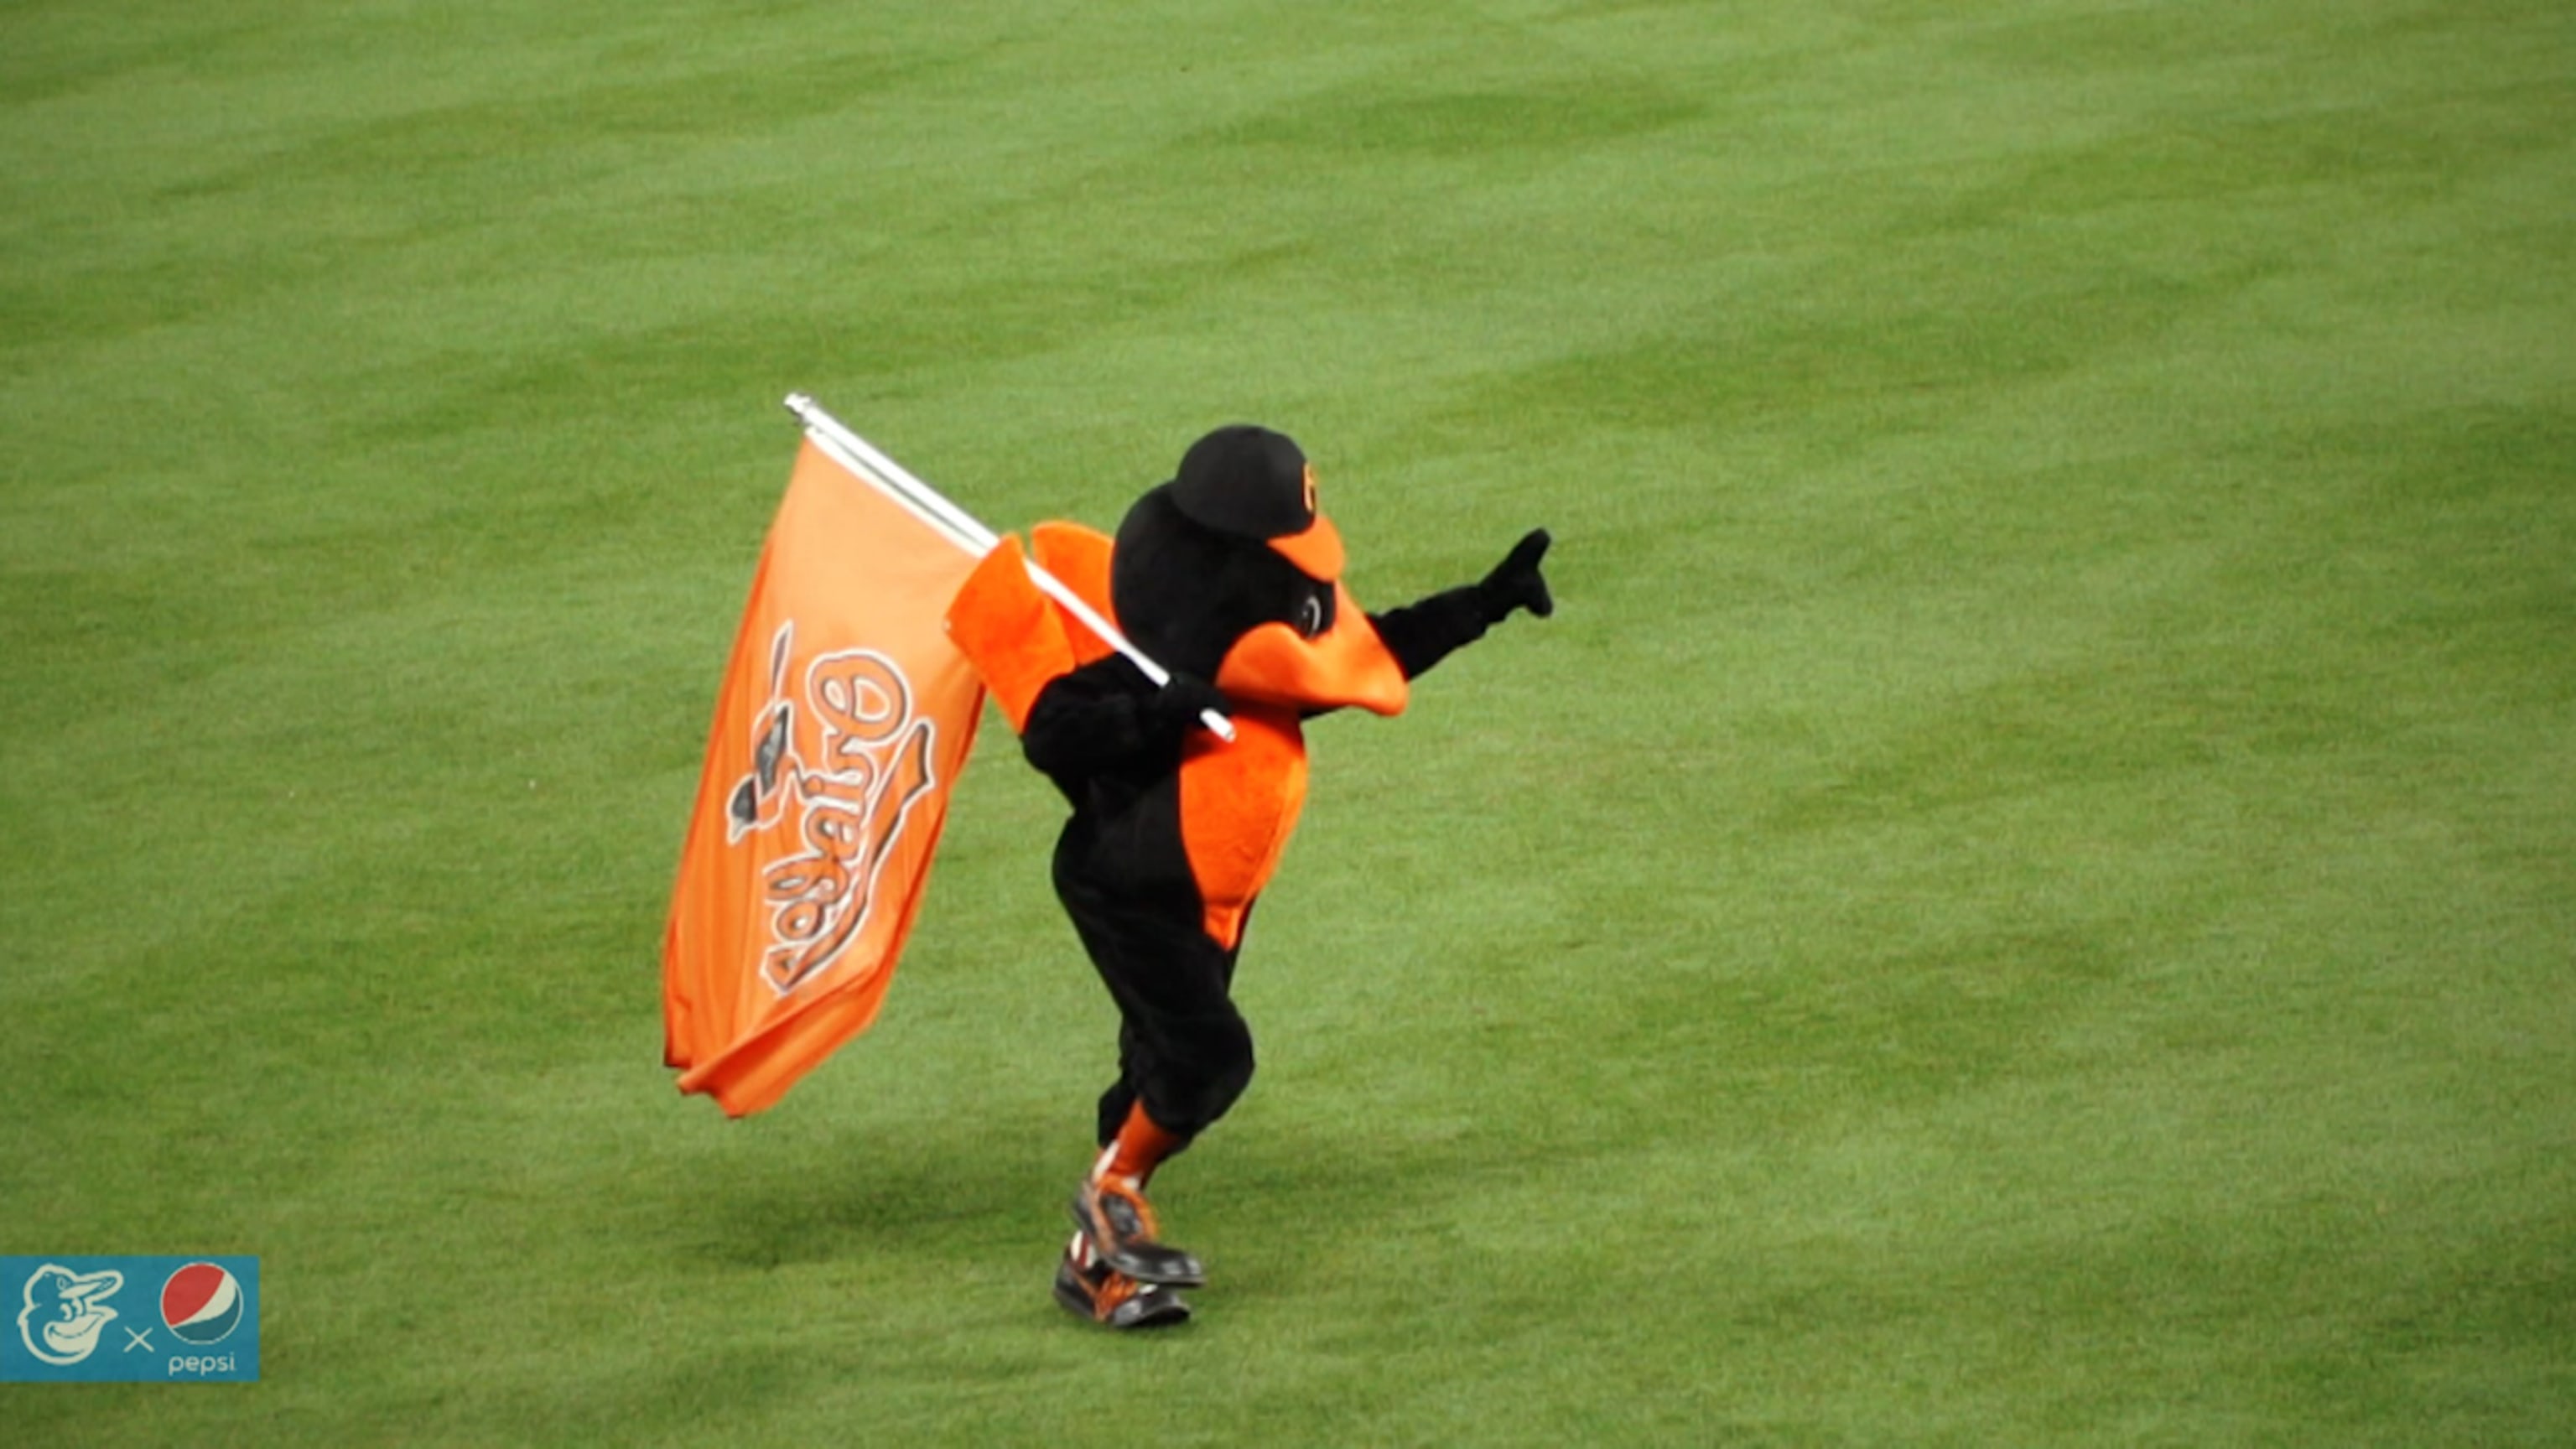 The Oriole Bird Baltimore Orioles 2023 City Connect Mascot